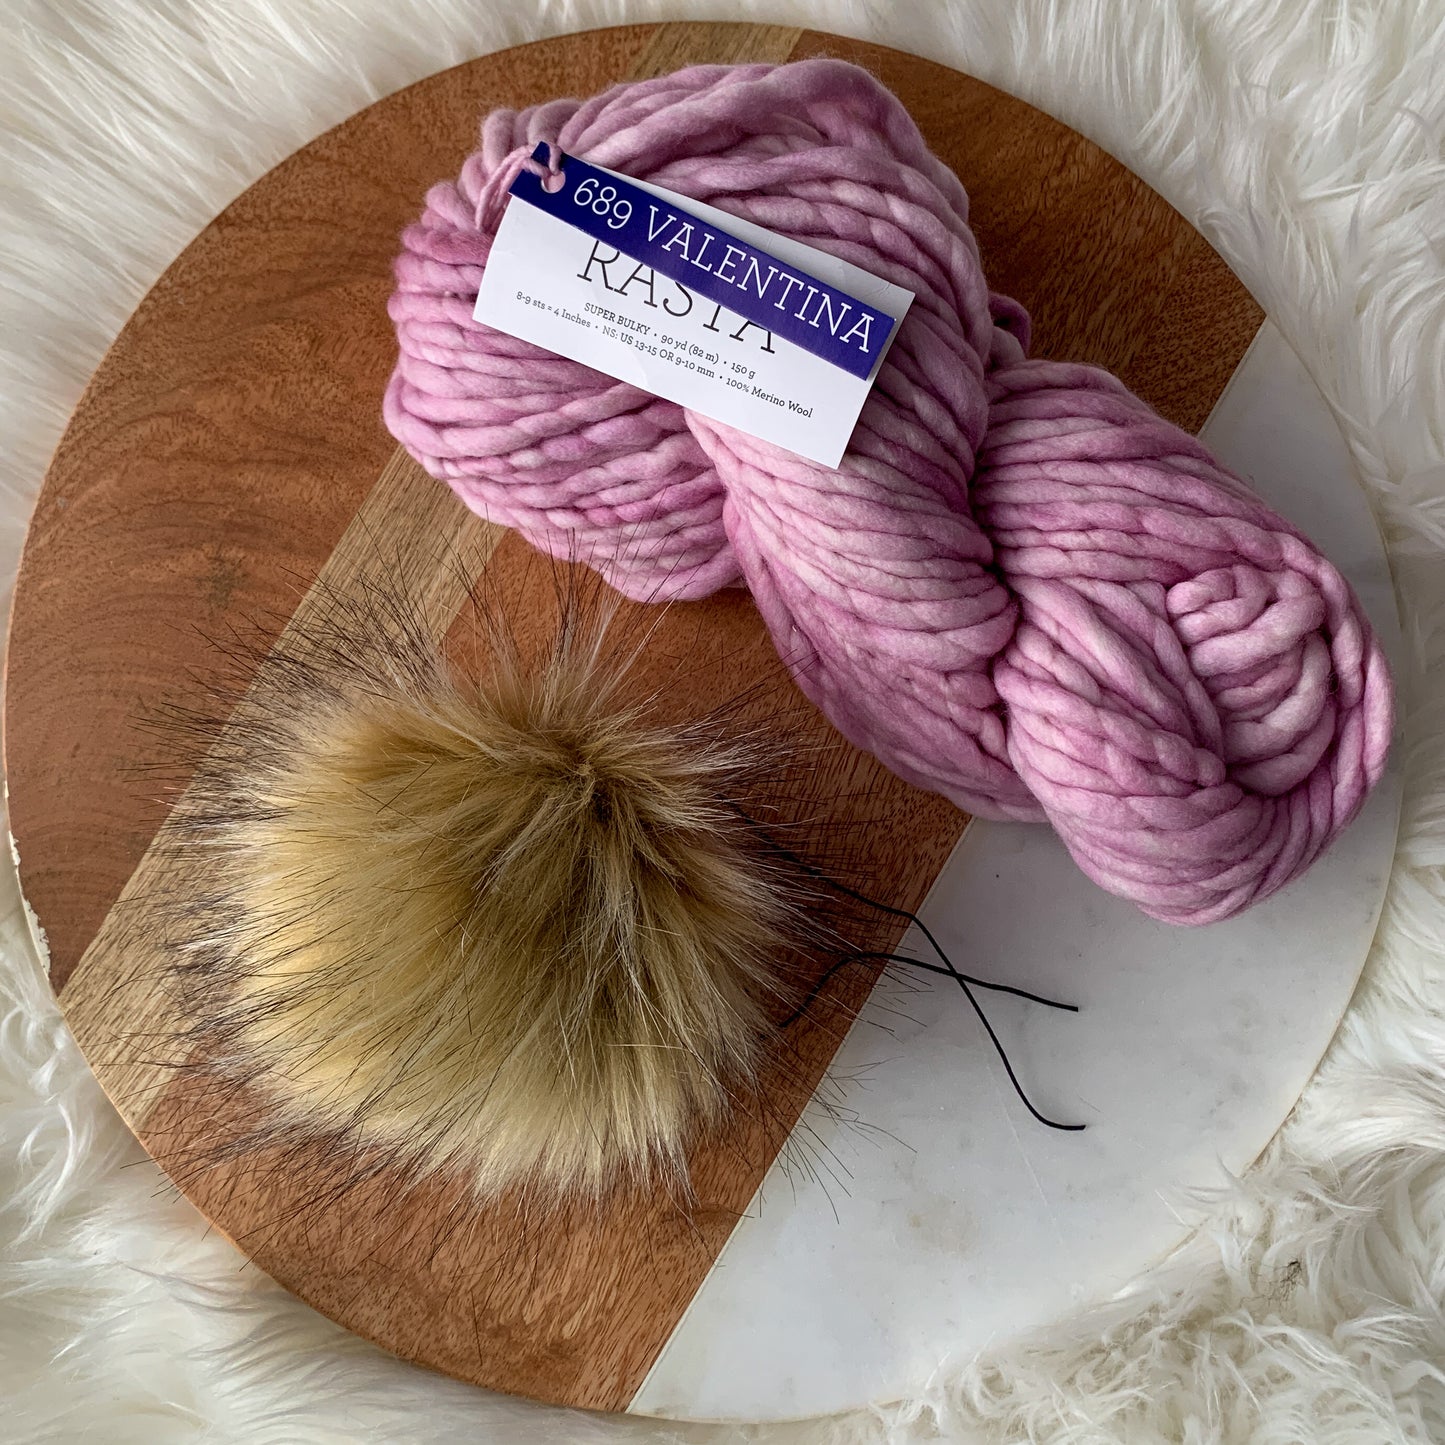 Knitting Kit: Valentina in Rasta